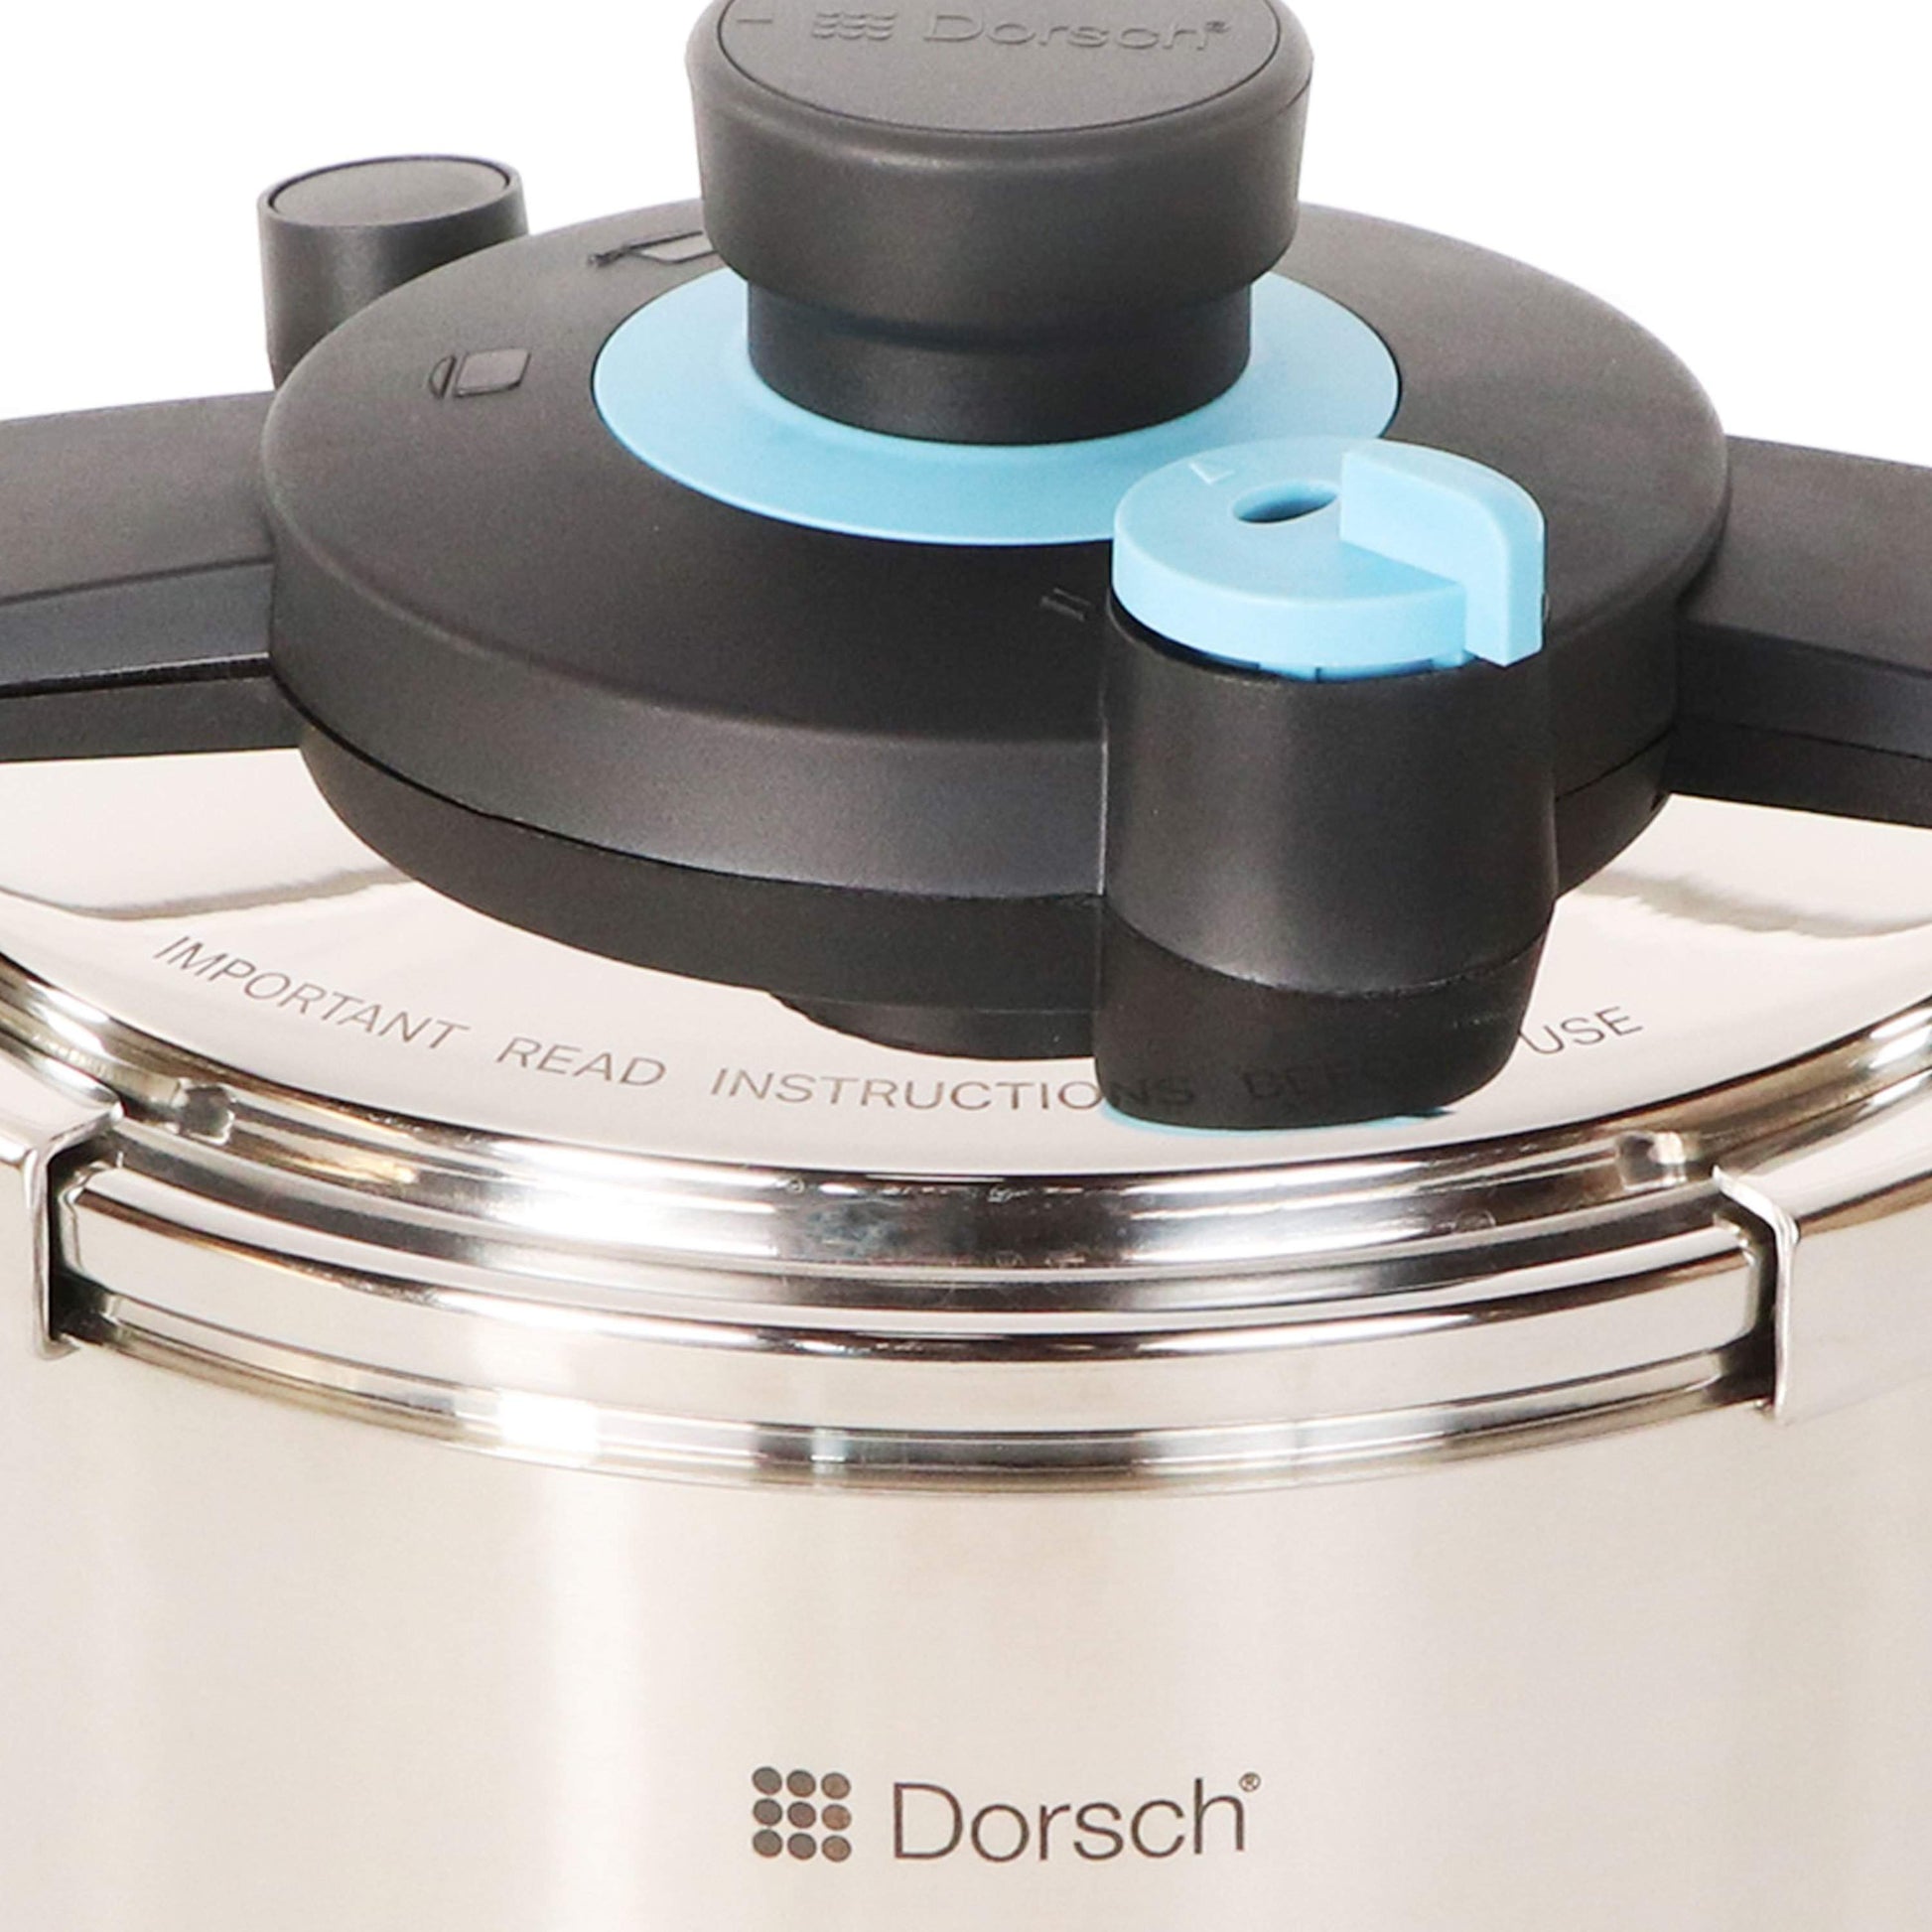 10L Dorsch GoPress Pressure Cooker-Royal Brands Co-